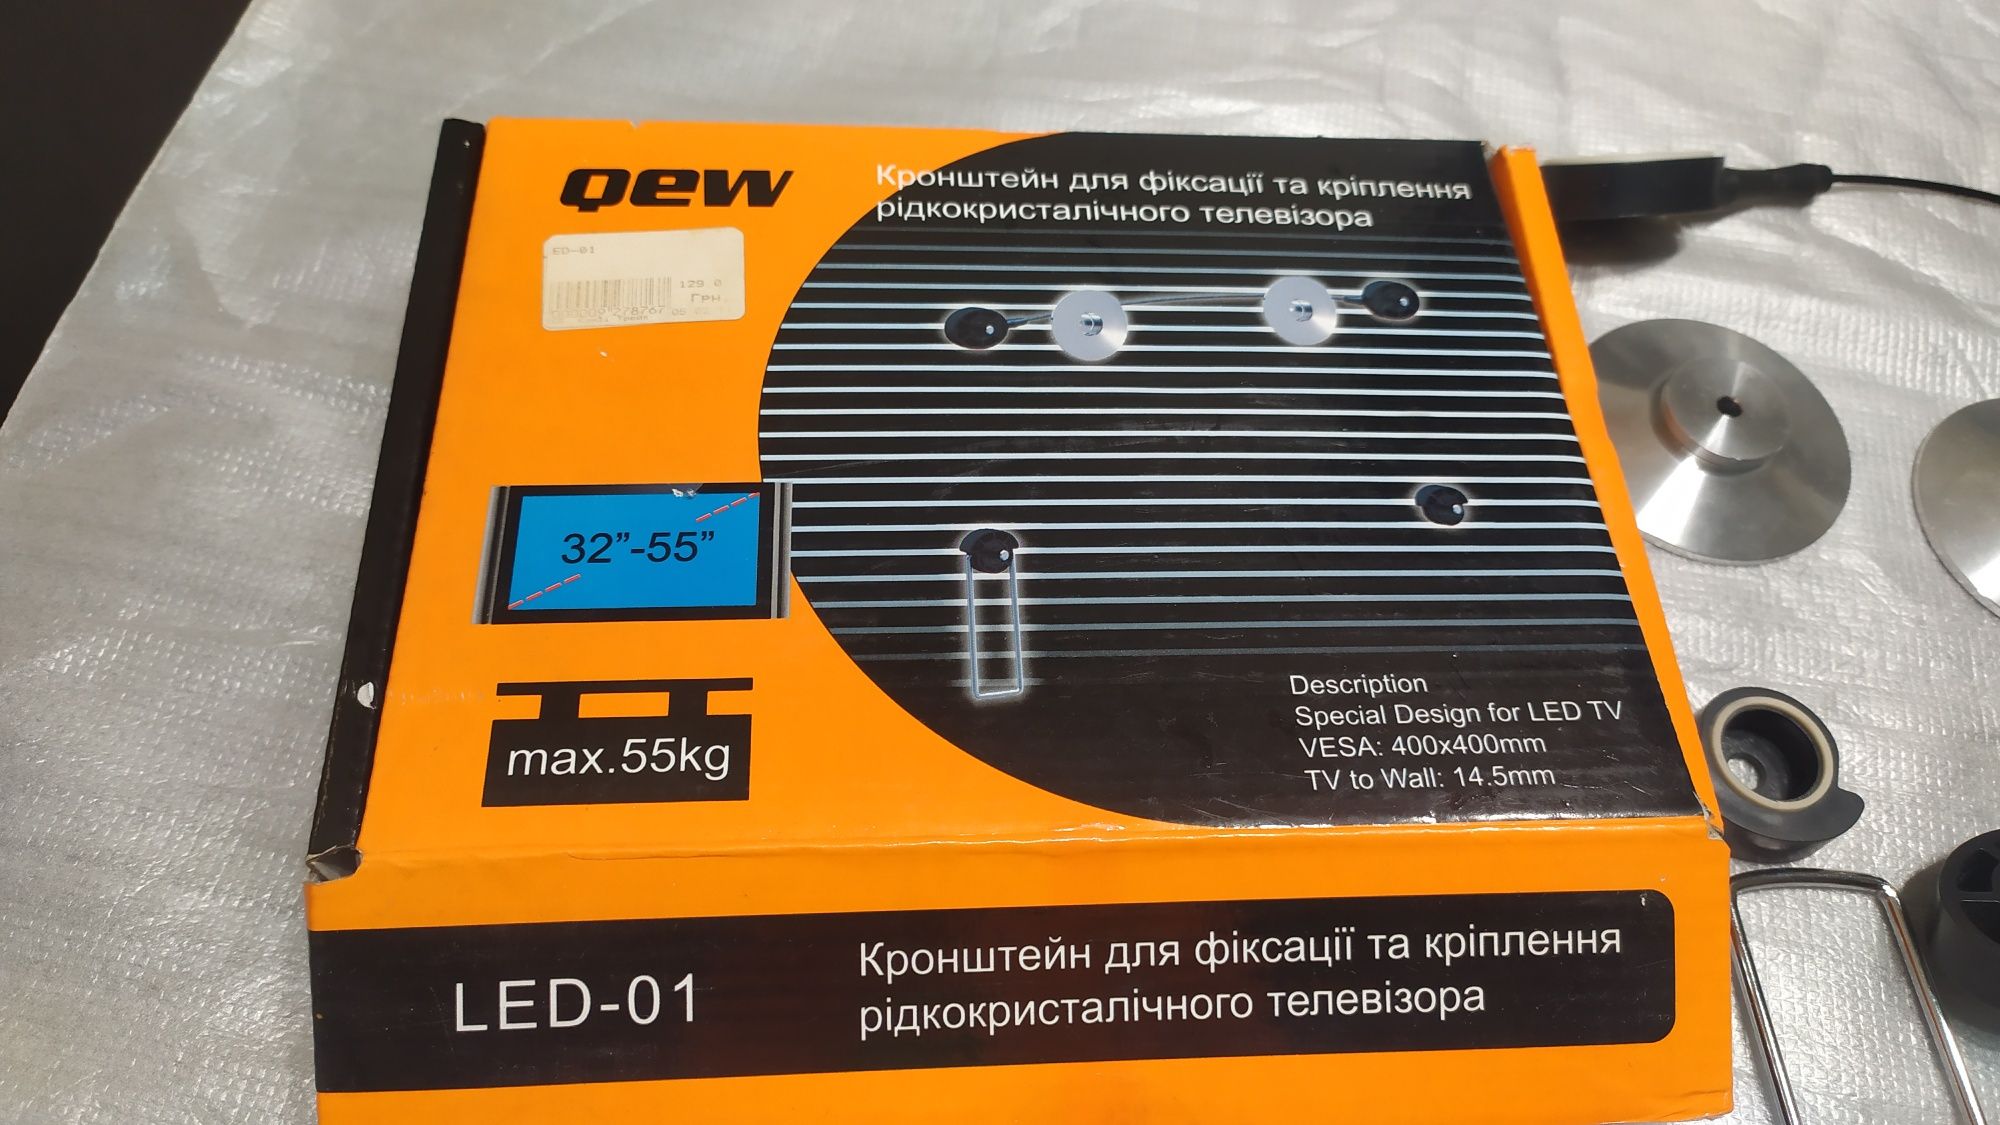 Кронштейн для крепления жидкокристалического телевизора LED - 01